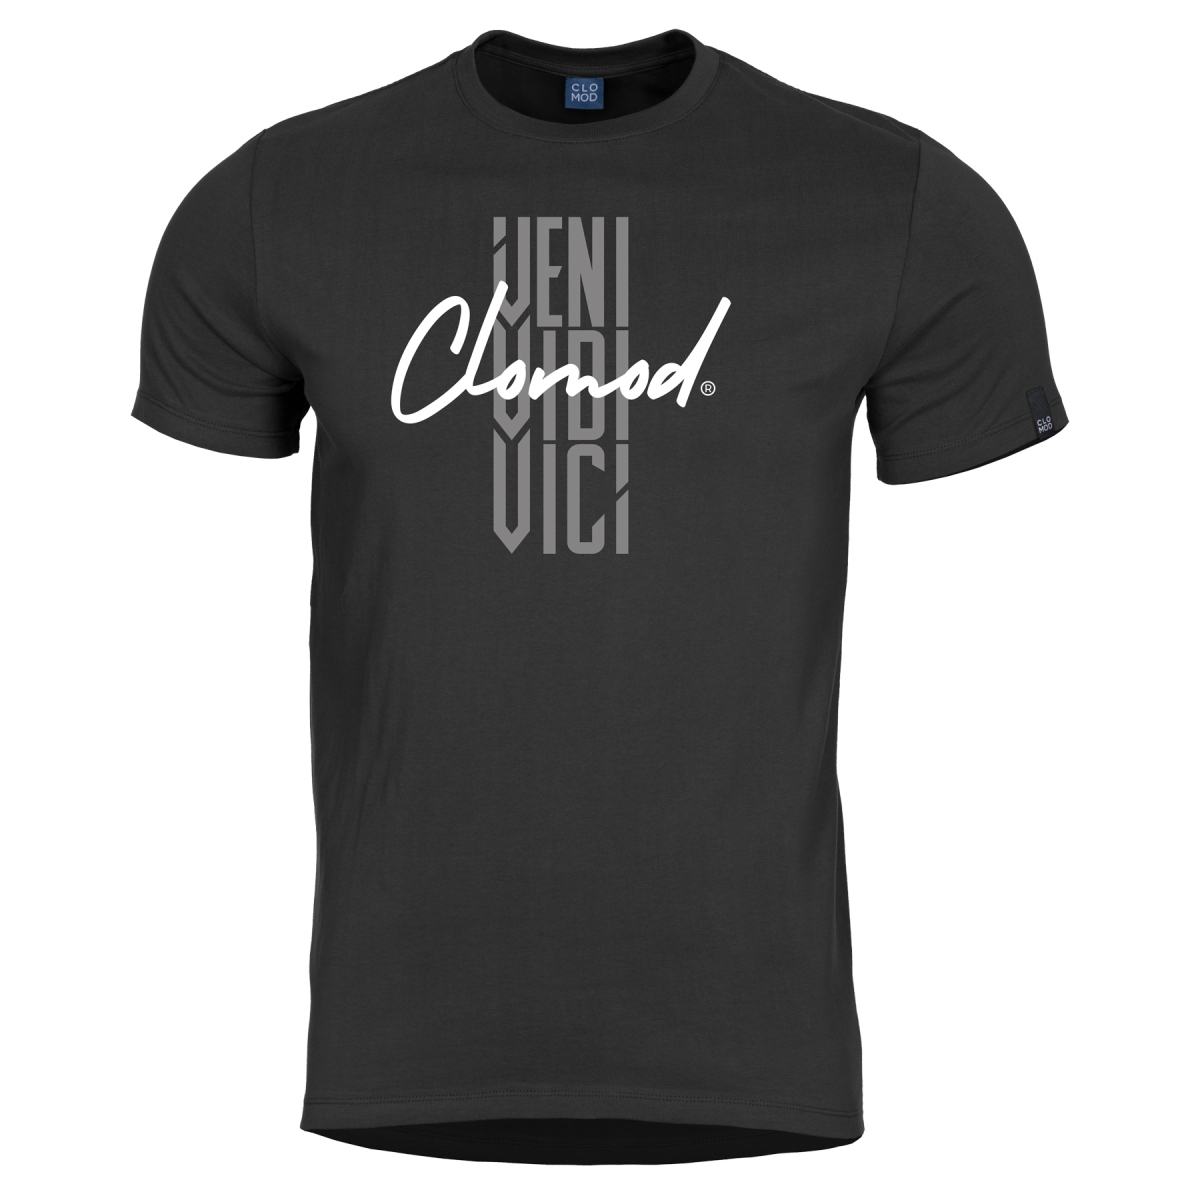 Clomod T-shirt "VENI" Black